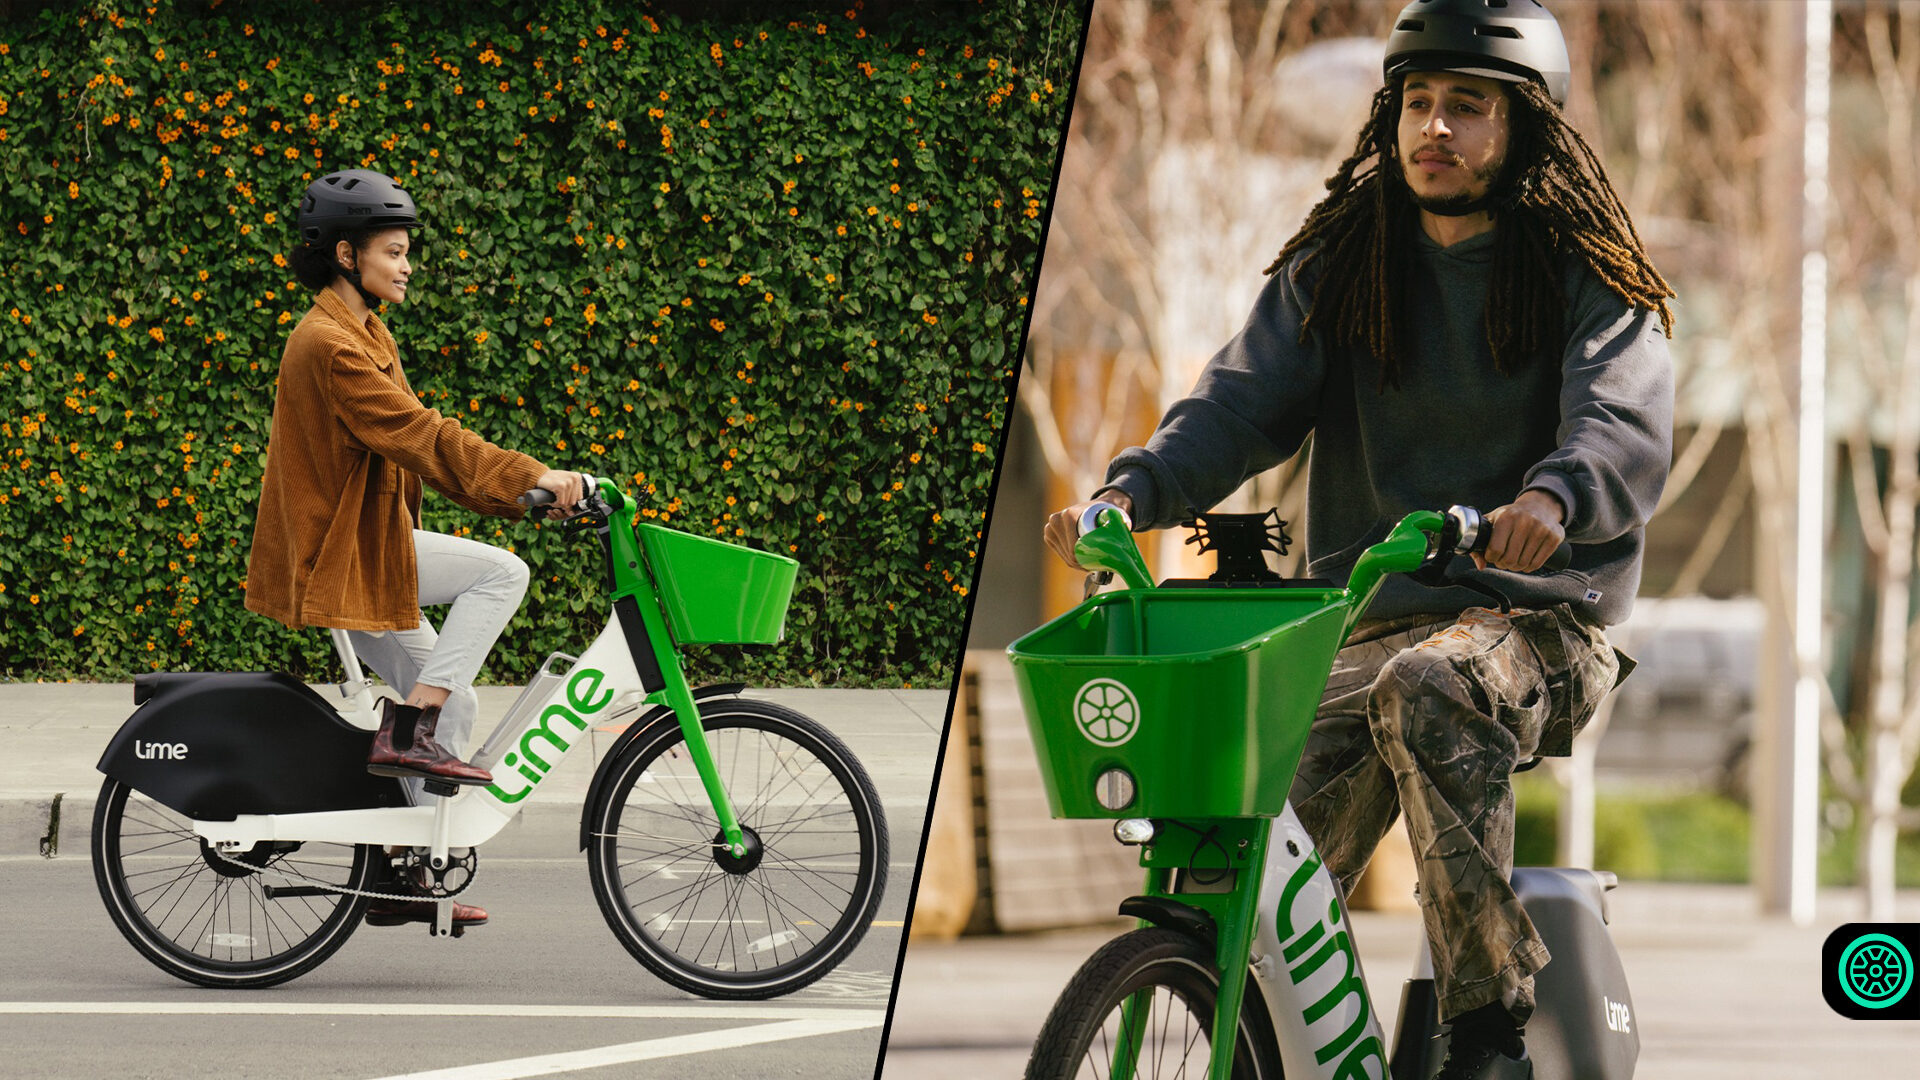 Lime yeni otomatik şanzımana sahip elektrikli bisikleti tanıttı 15